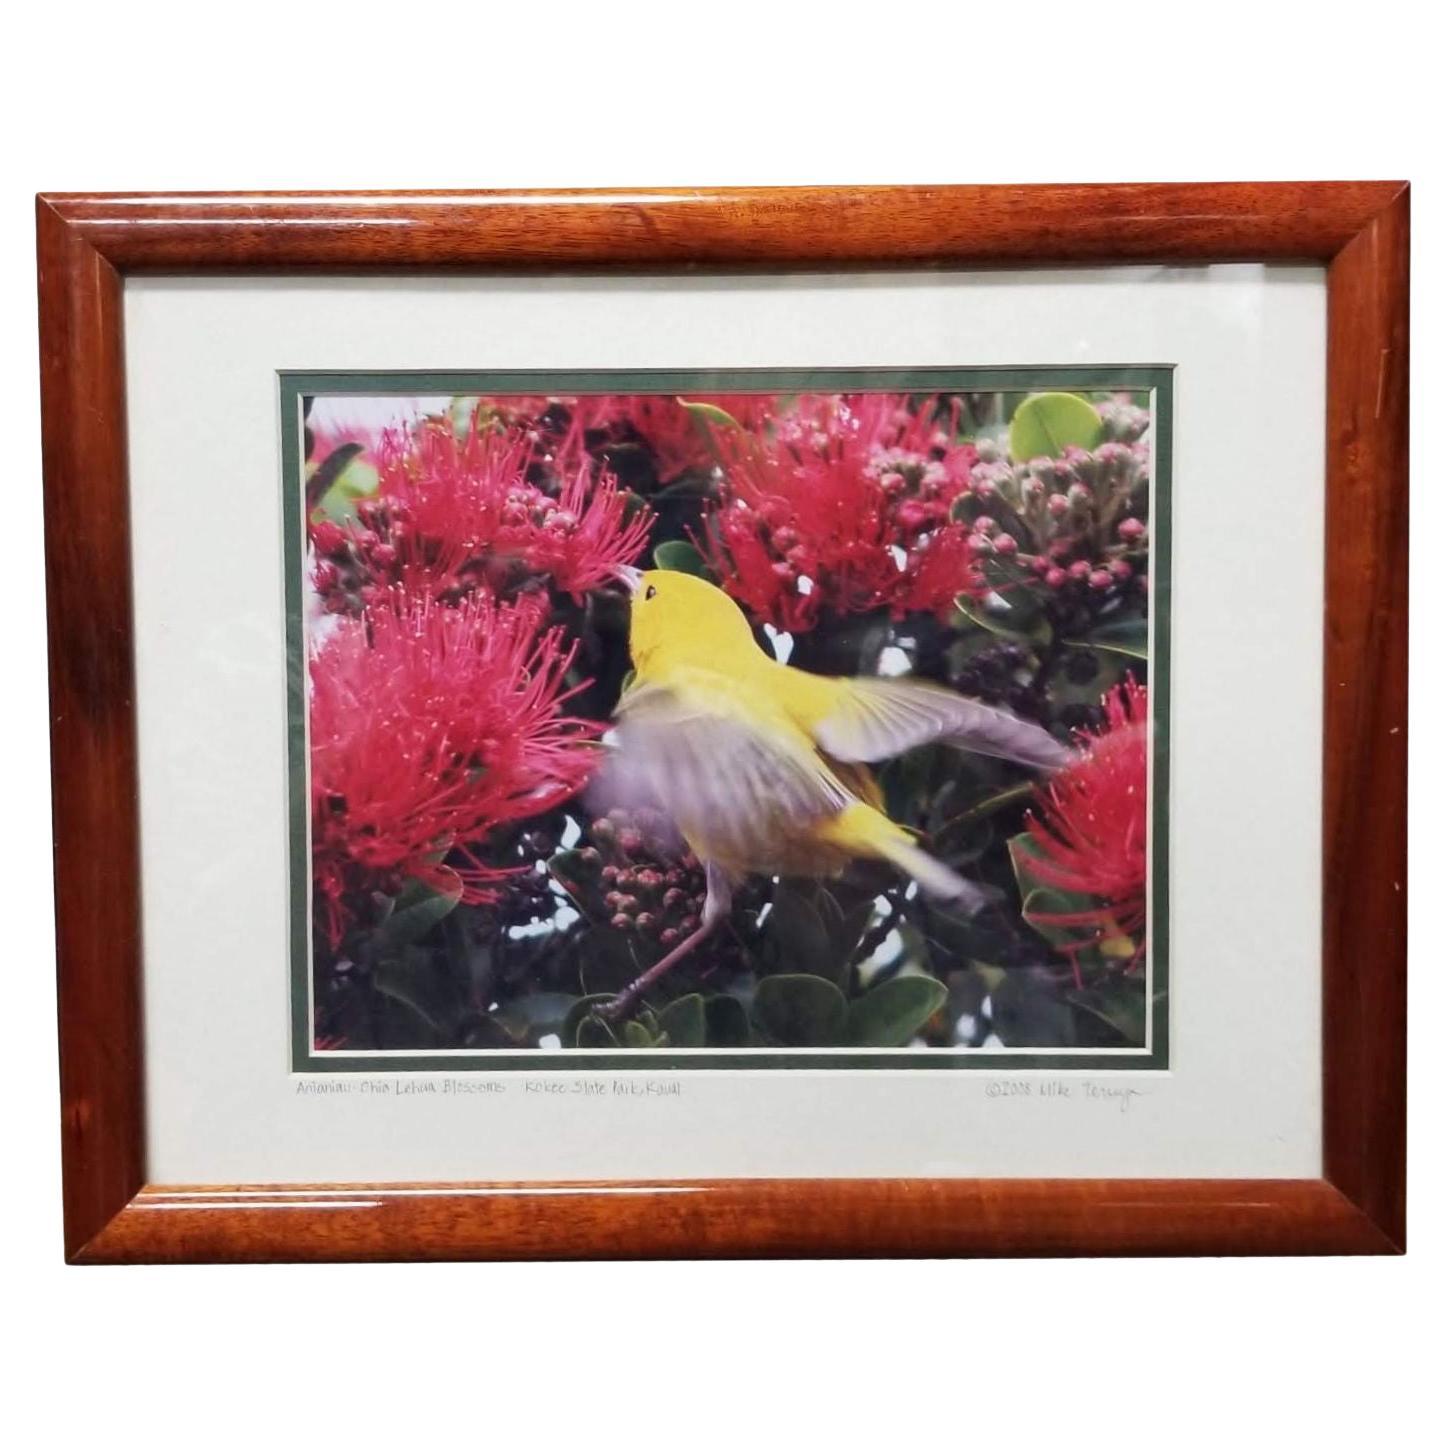 Gerahmter Original-Fotodruck eines gelben Vogels in Hawaii-Blumenblumen